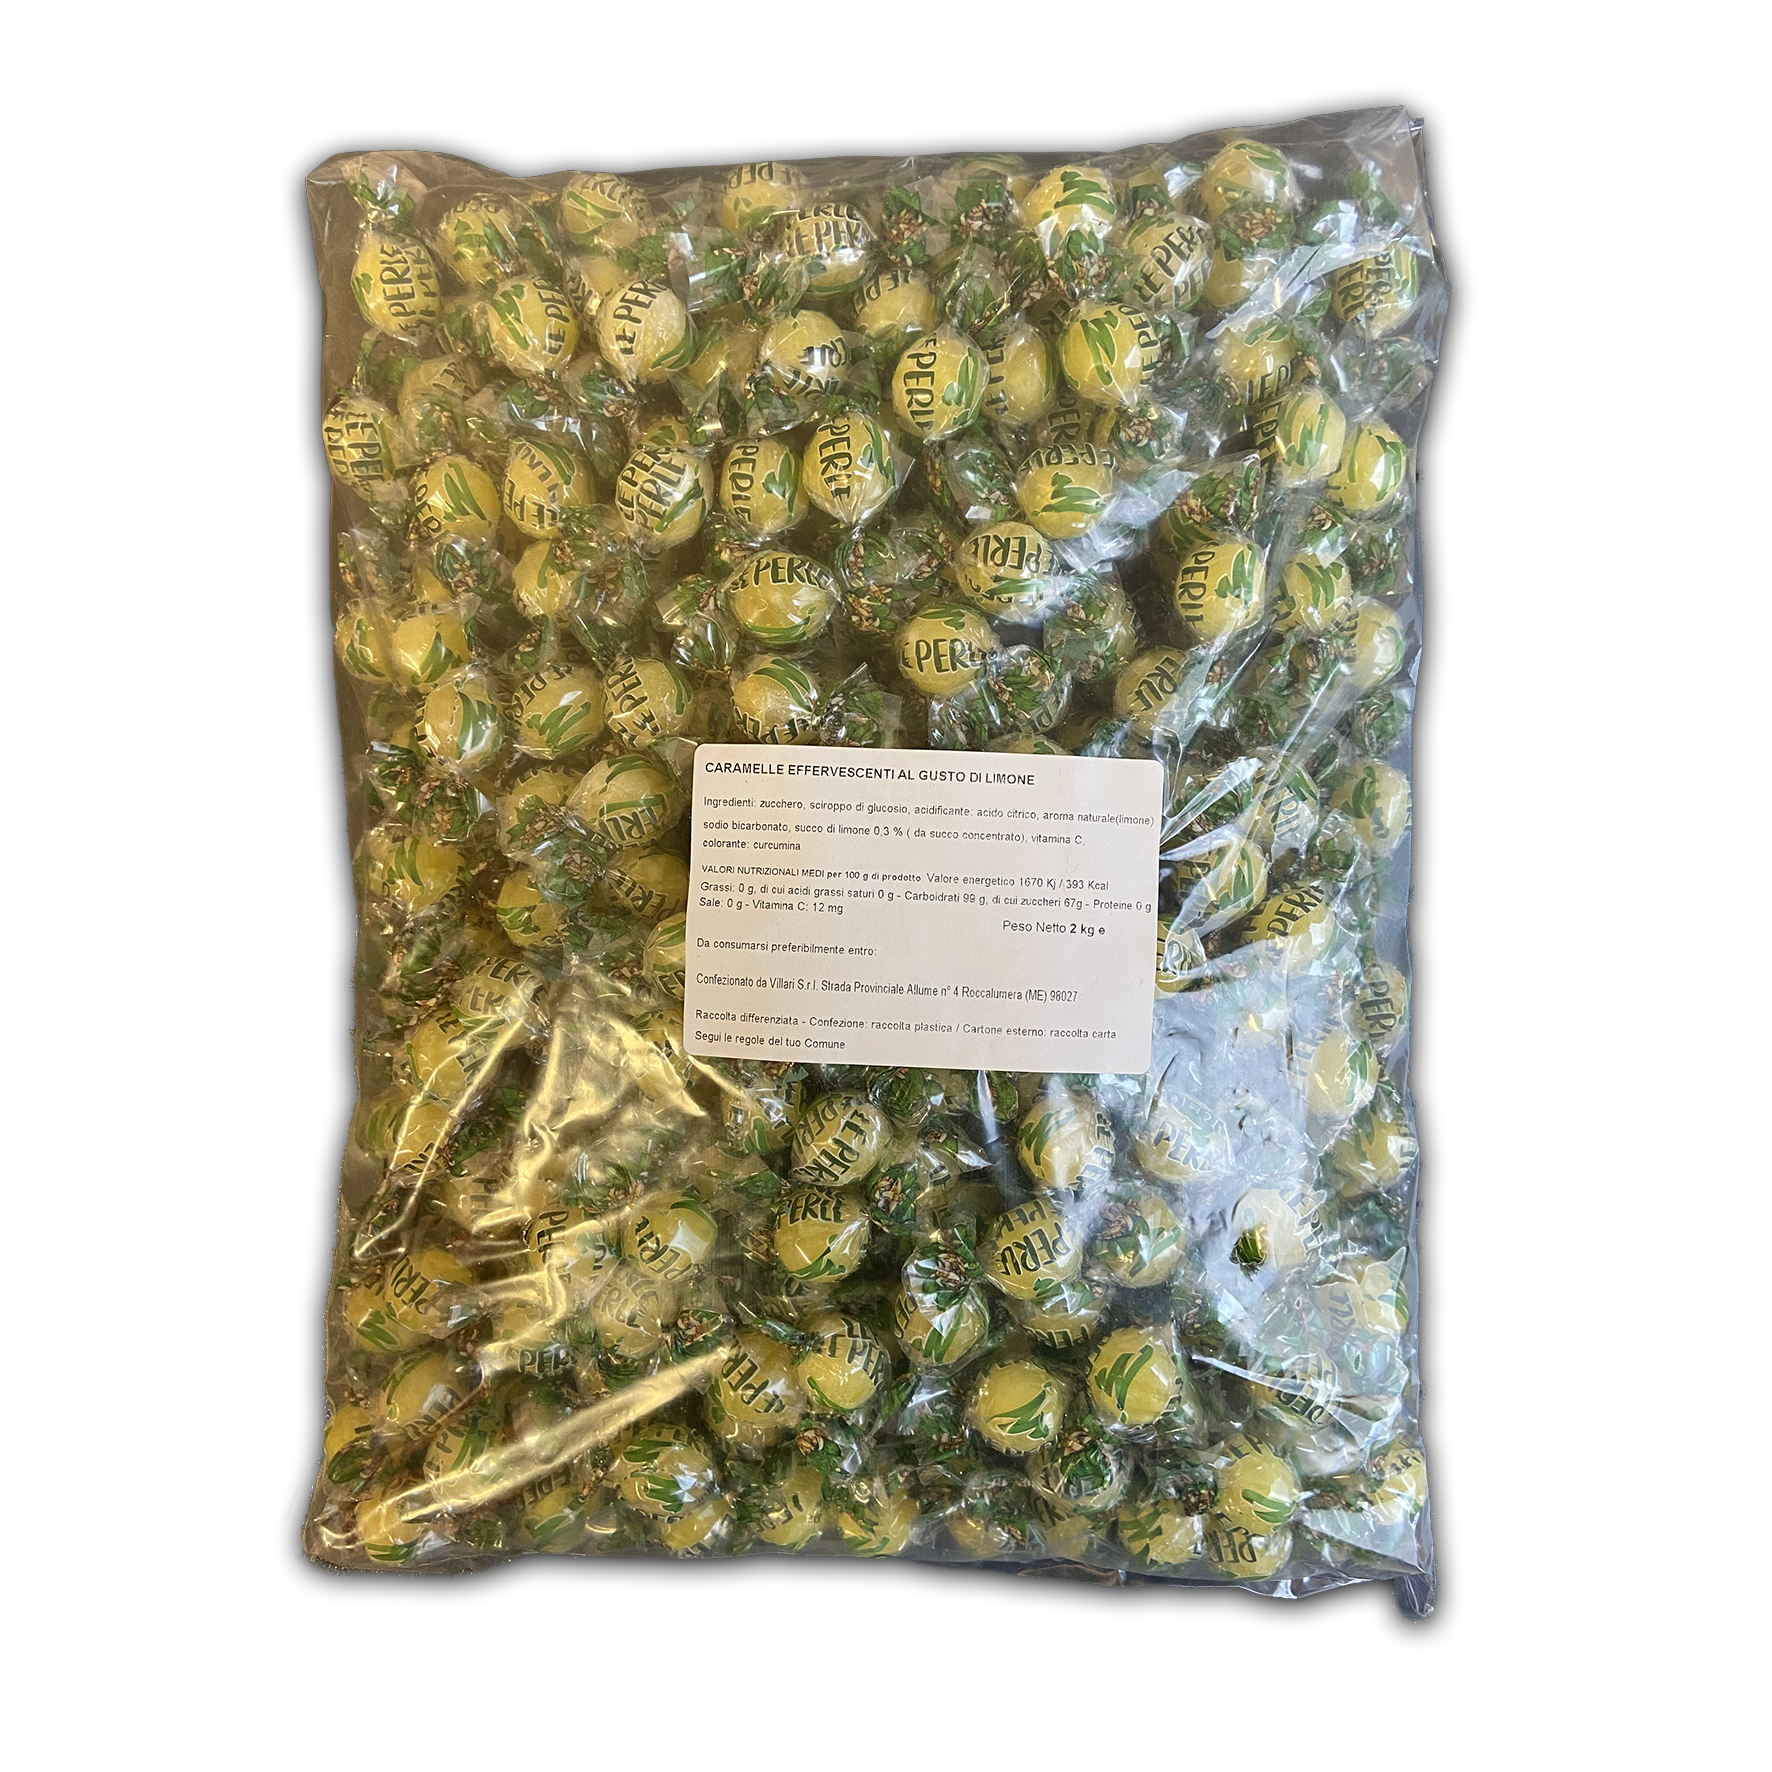 Caramelle Perle di Lumi sfuse in sacchetto da 2kg. Etichetta con ingredienti e valori nutrizionali